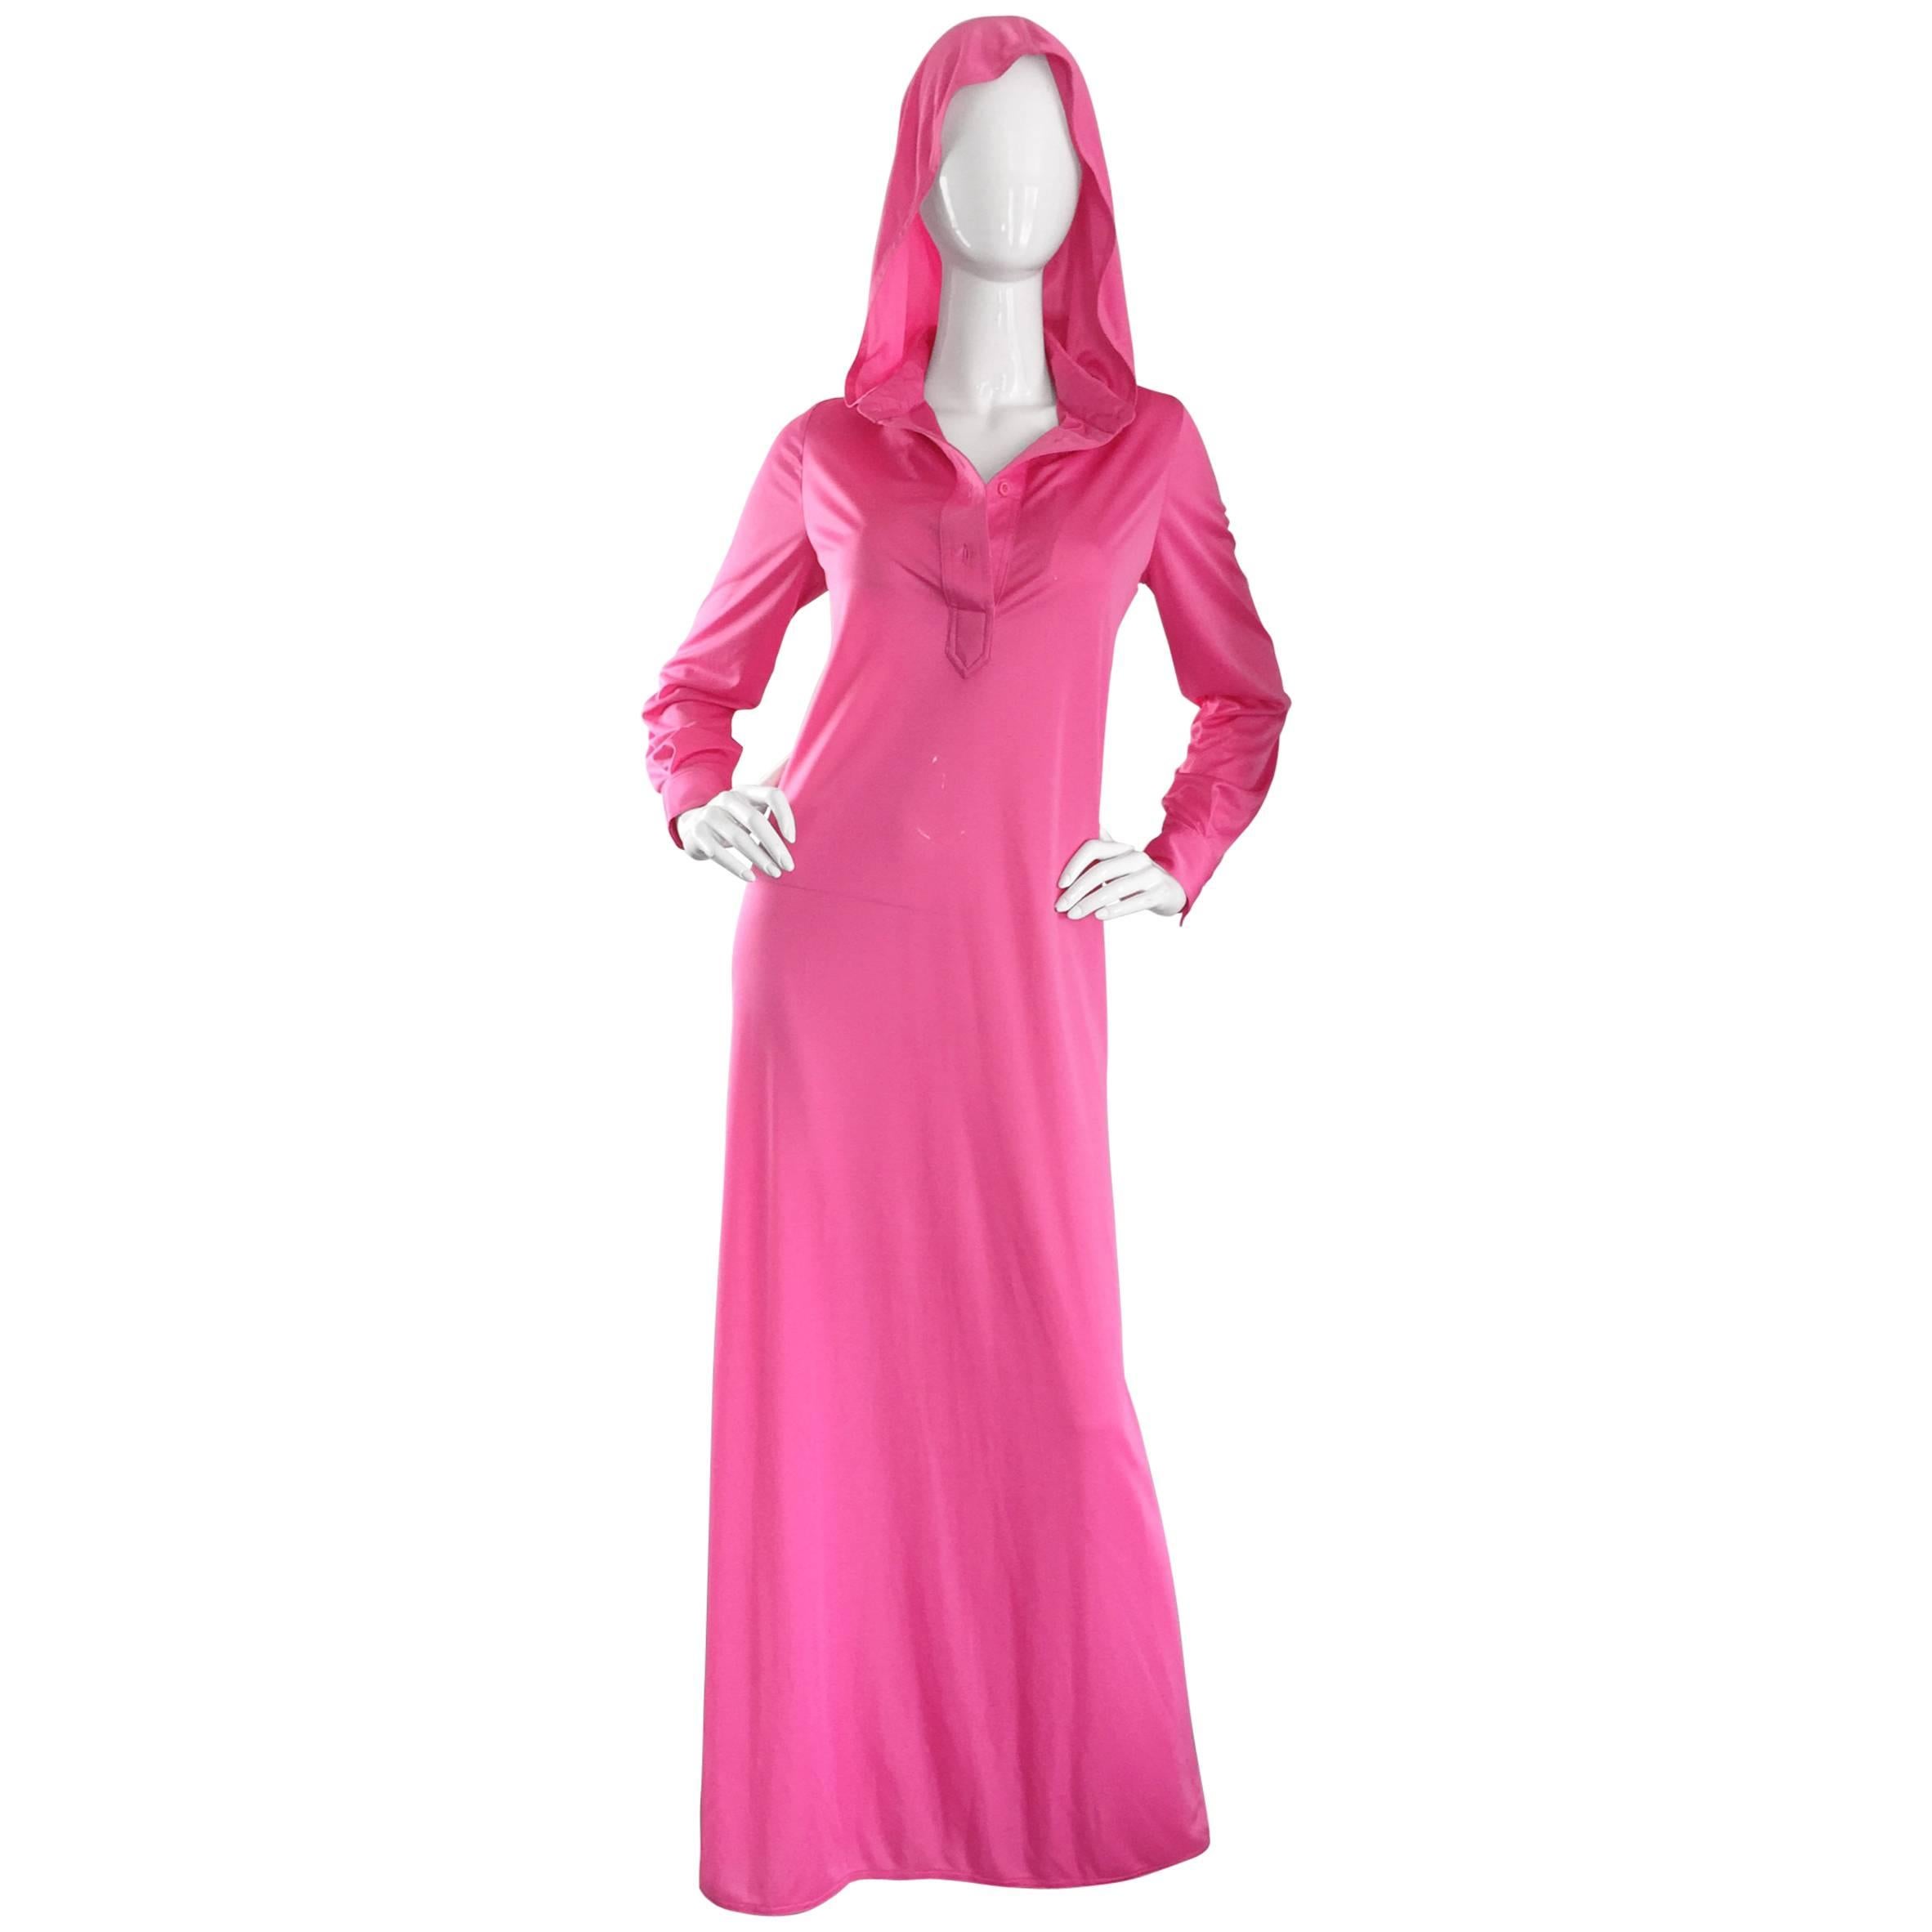 Geoffrey Beene Vintage Pink Hooded Caftan Long Sleeve Maxi Dress